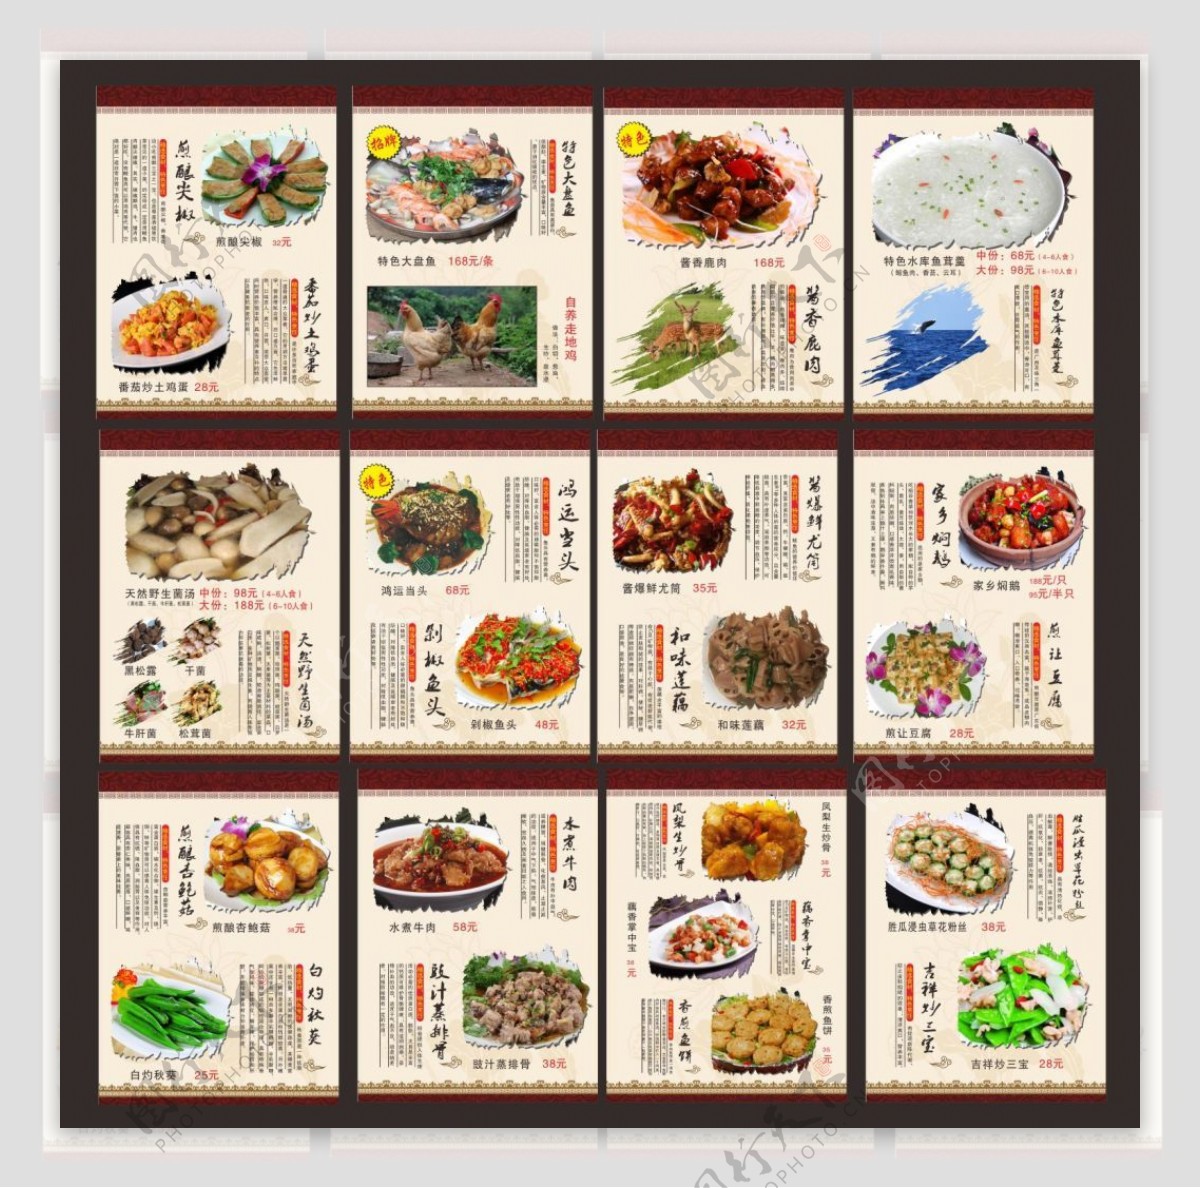 中国风菜谱模板